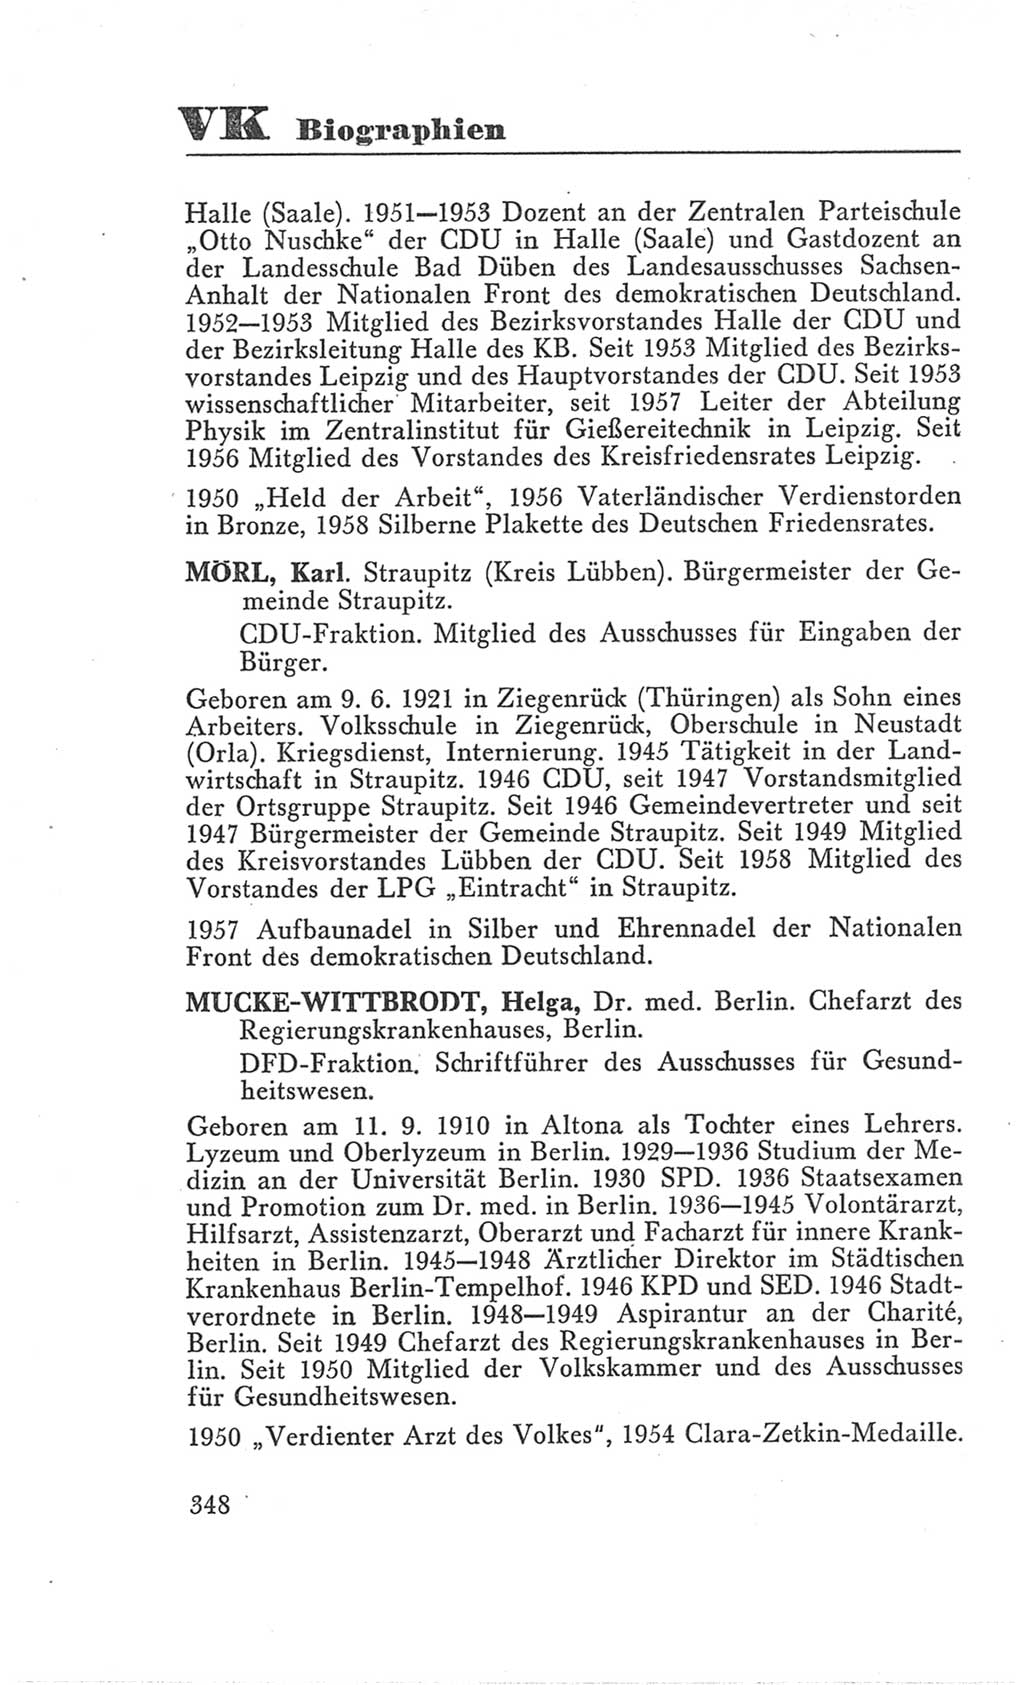 Handbuch der Volkskammer (VK) der Deutschen Demokratischen Republik (DDR), 3. Wahlperiode 1958-1963, Seite 348 (Hdb. VK. DDR 3. WP. 1958-1963, S. 348)